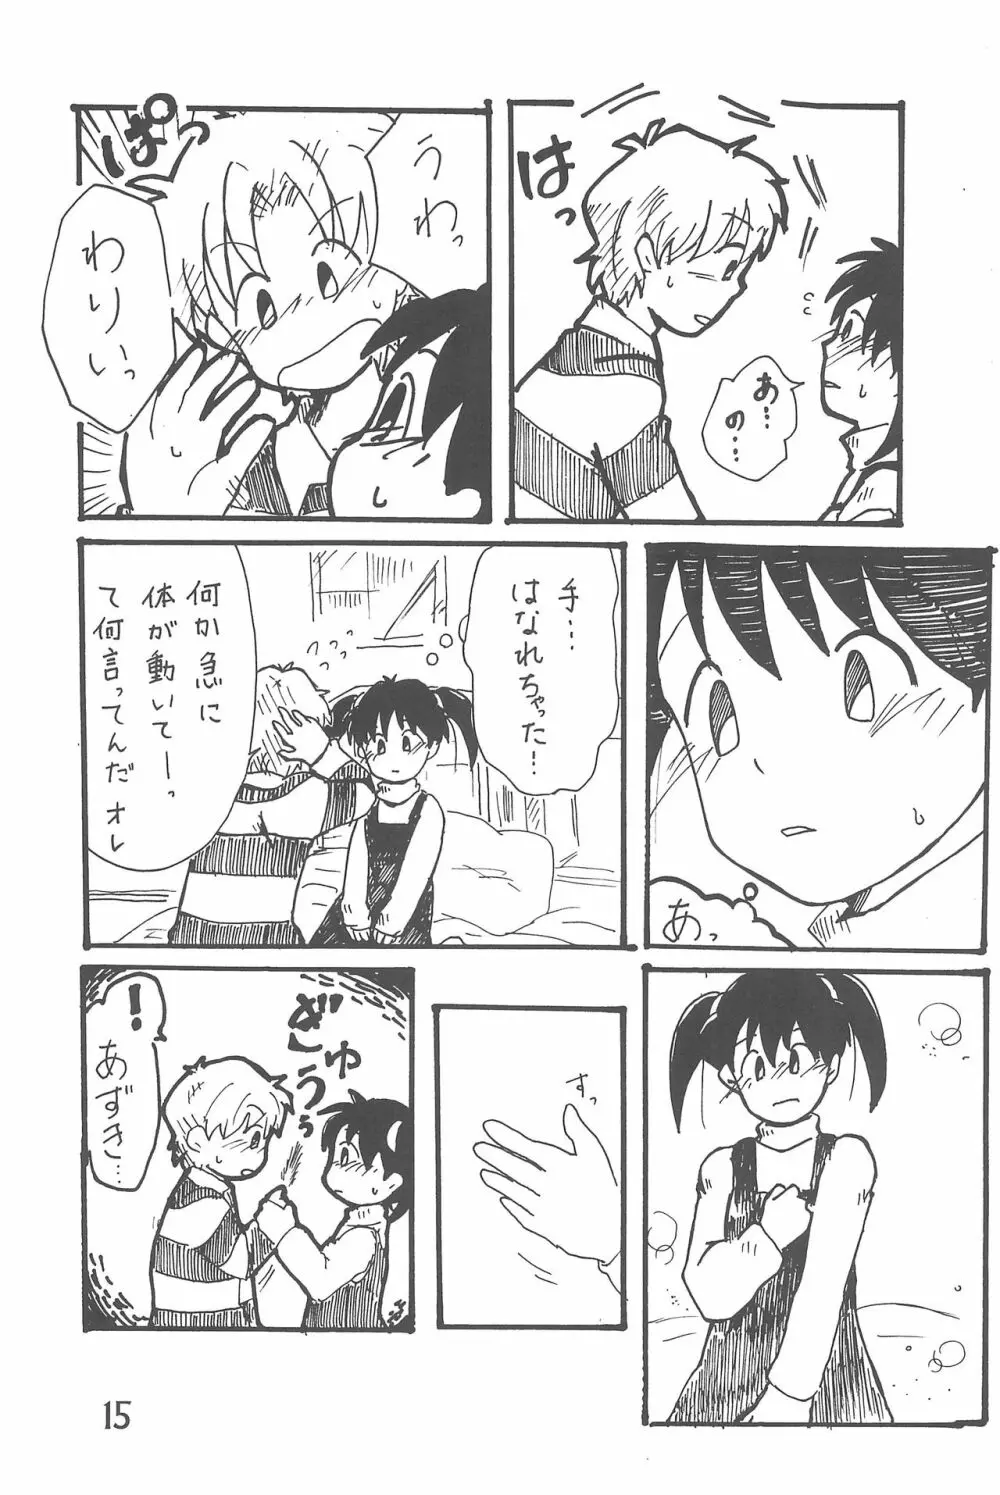 ありがとう・・・ だいすき! - page15